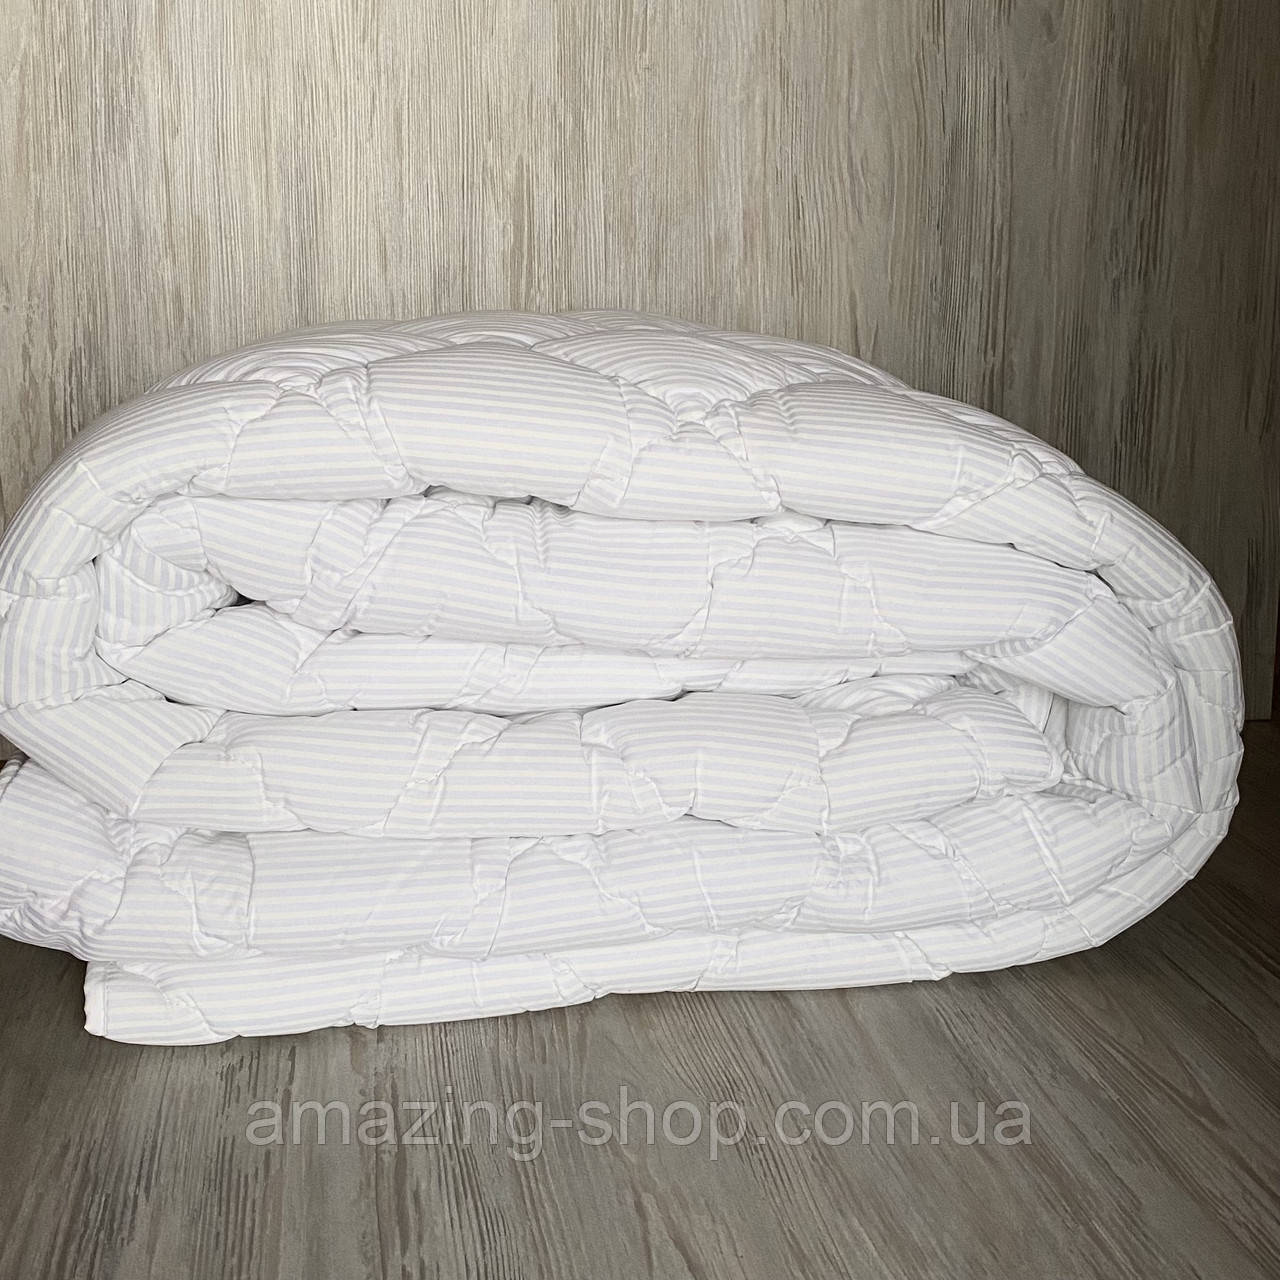 Ковдра на холлофайбері ОДА Євро розміру 175х210 Стьобана зимова ковдра високої якості білого кольору